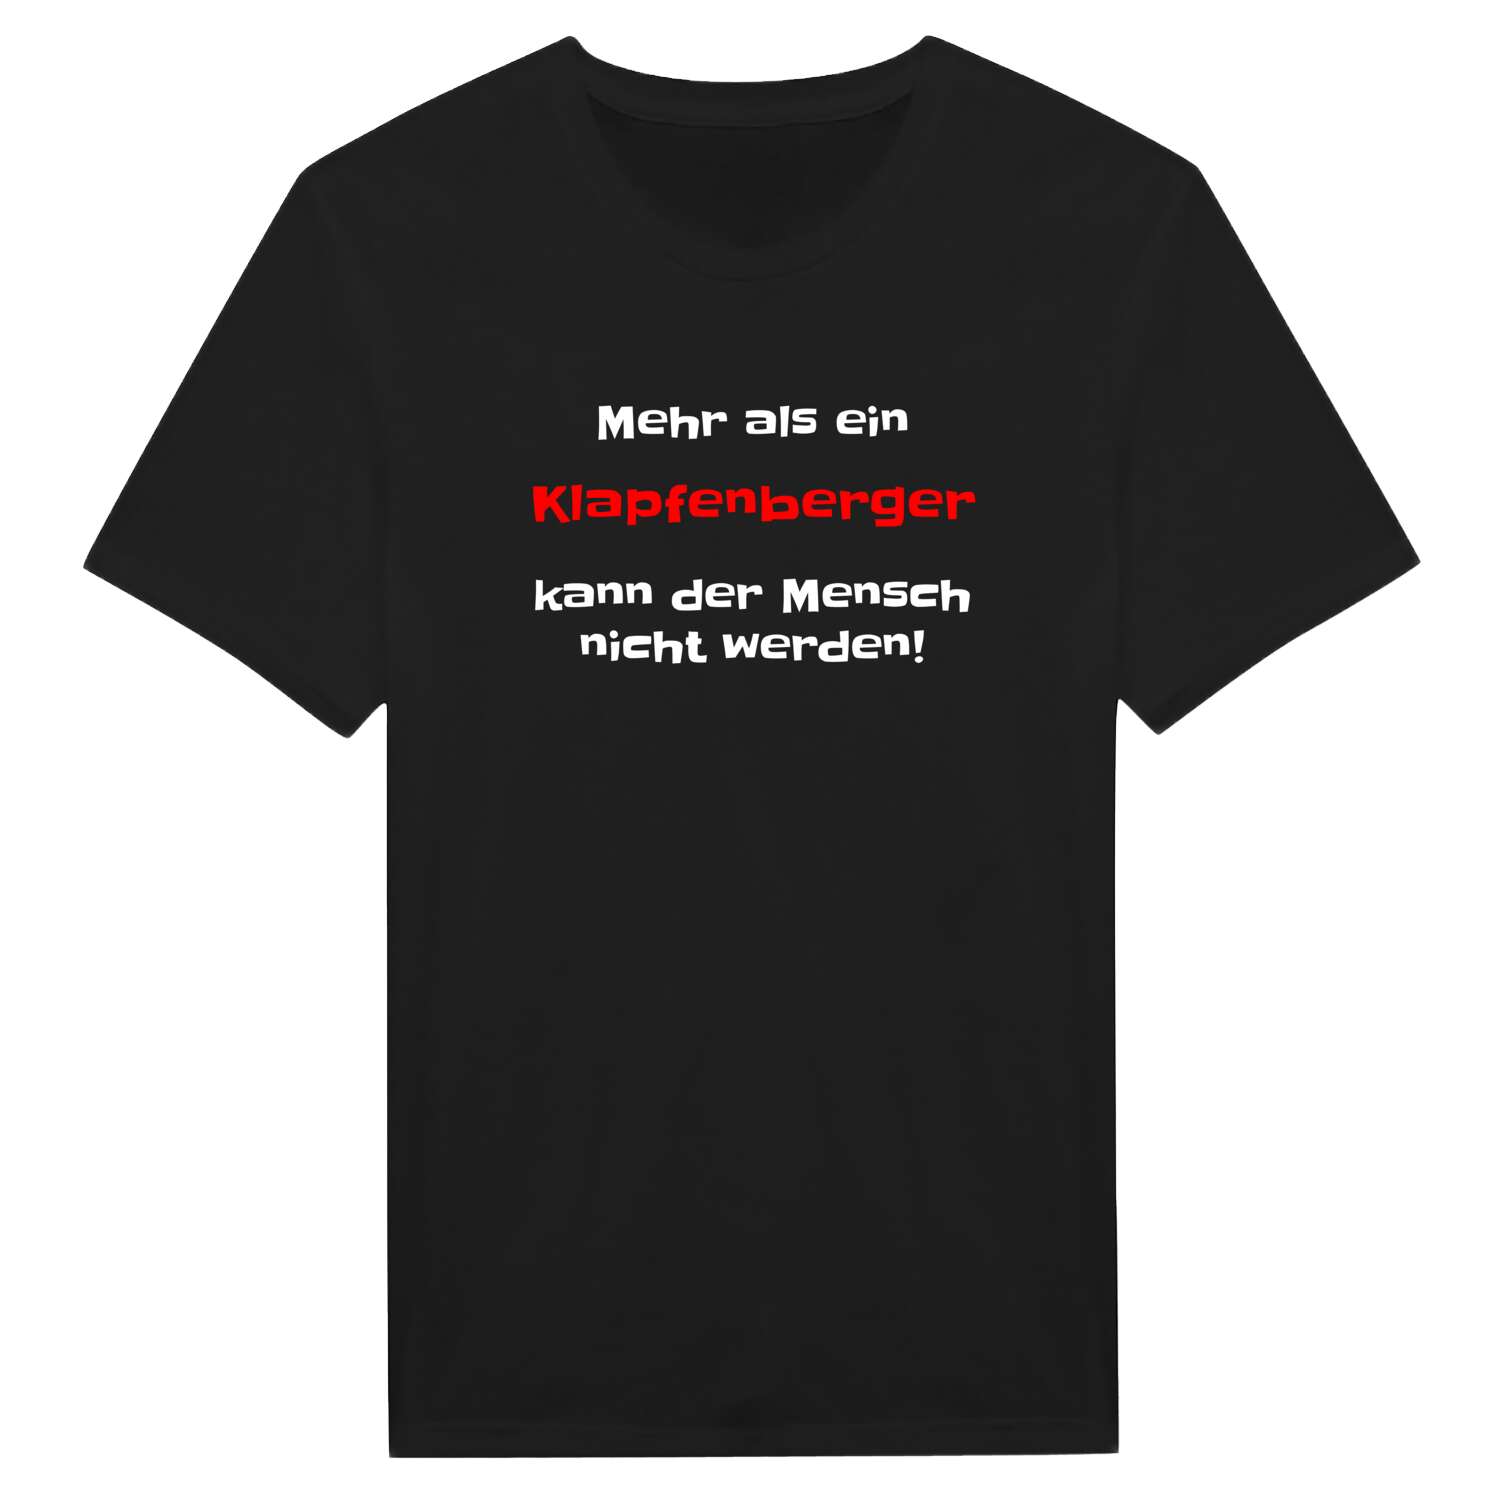 Klapfenberg T-Shirt »Mehr als ein«